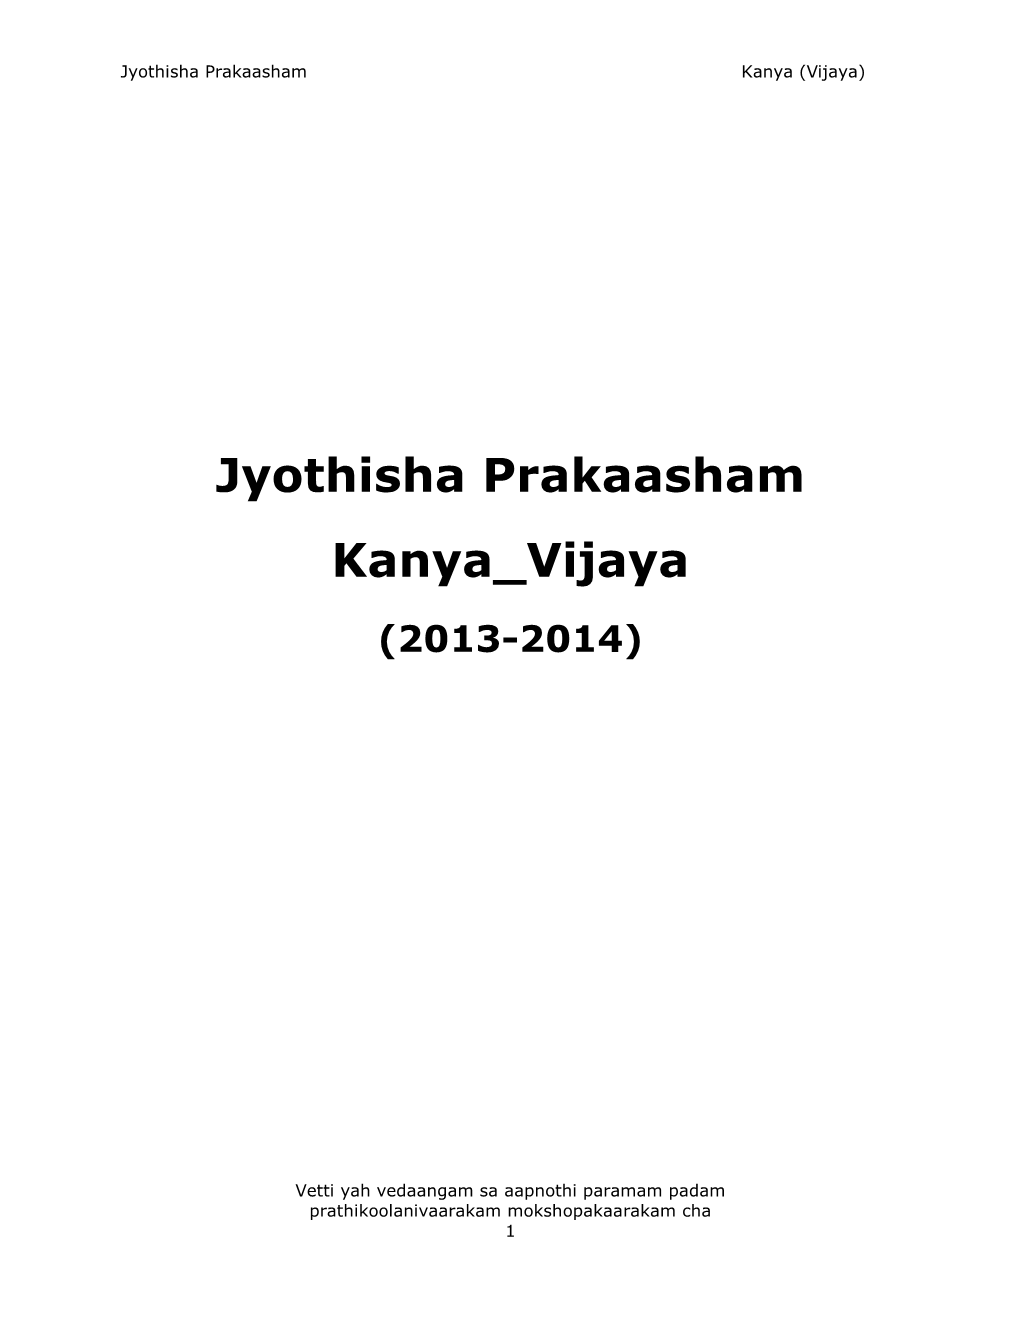 Jyothisha Prakaasham Kanya Vijaya